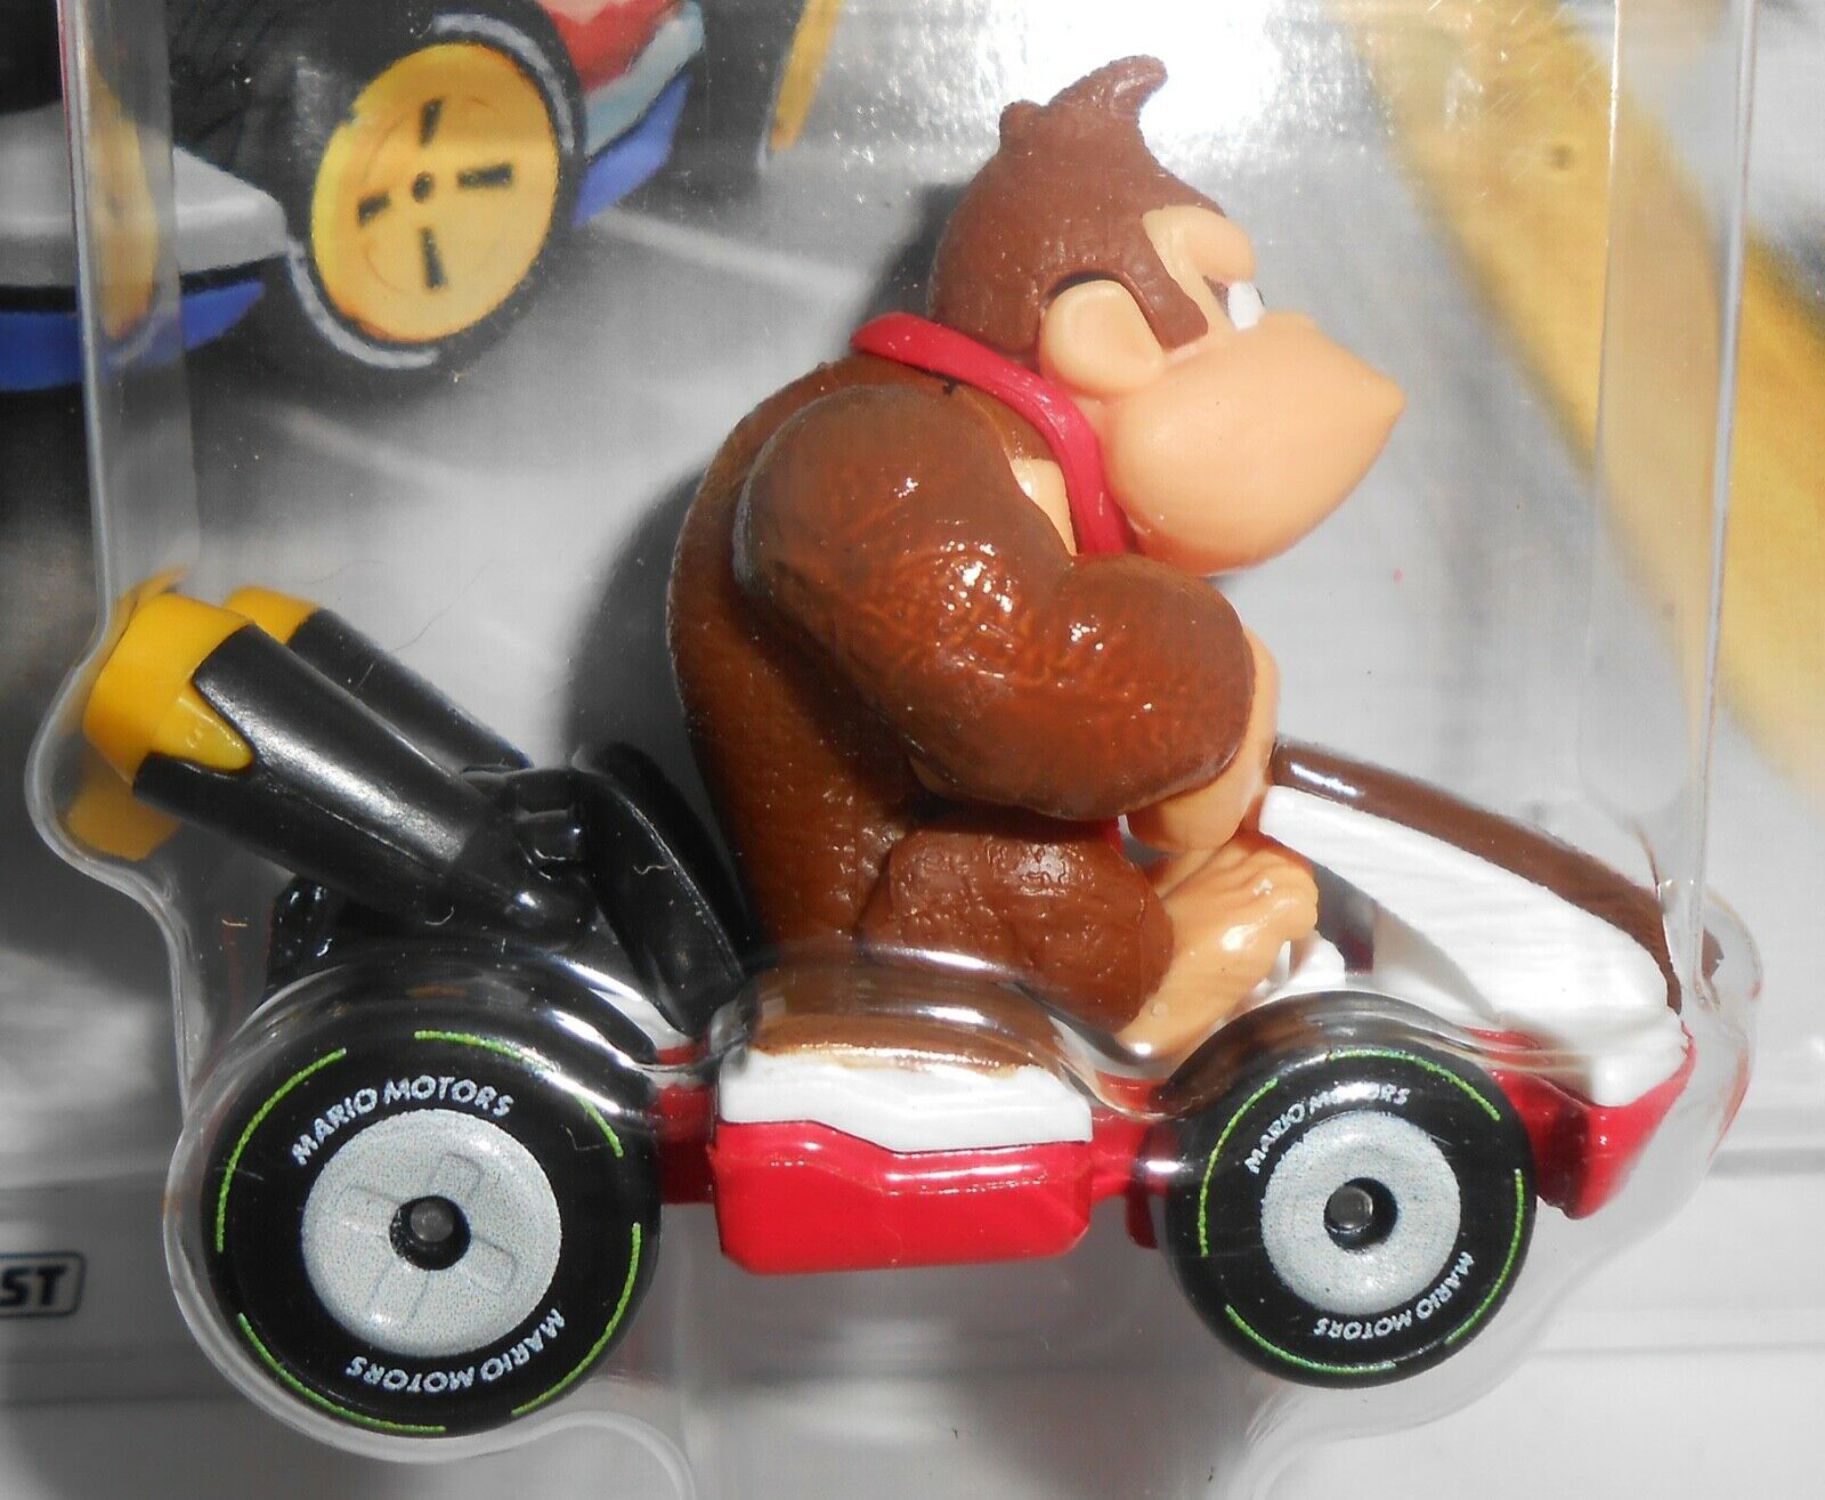 Hot Wheels Mario Kart Donkey Kong - image 2 of 3